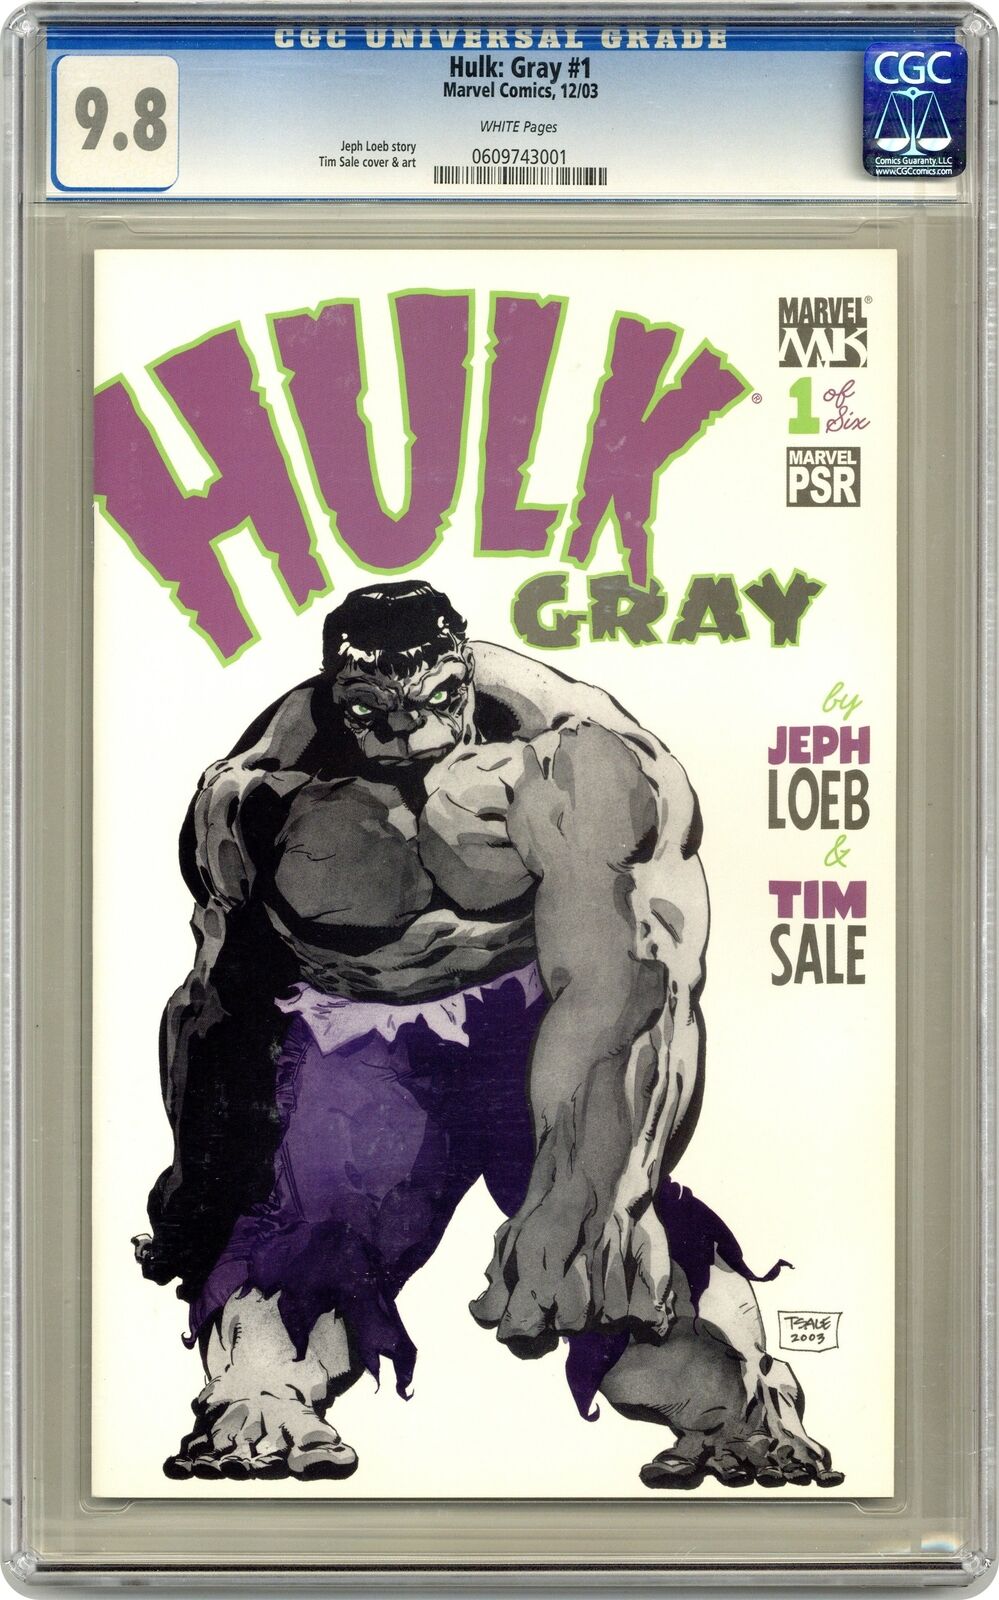 Hulk Gray #1 CGC 9.8 2003 0609743001